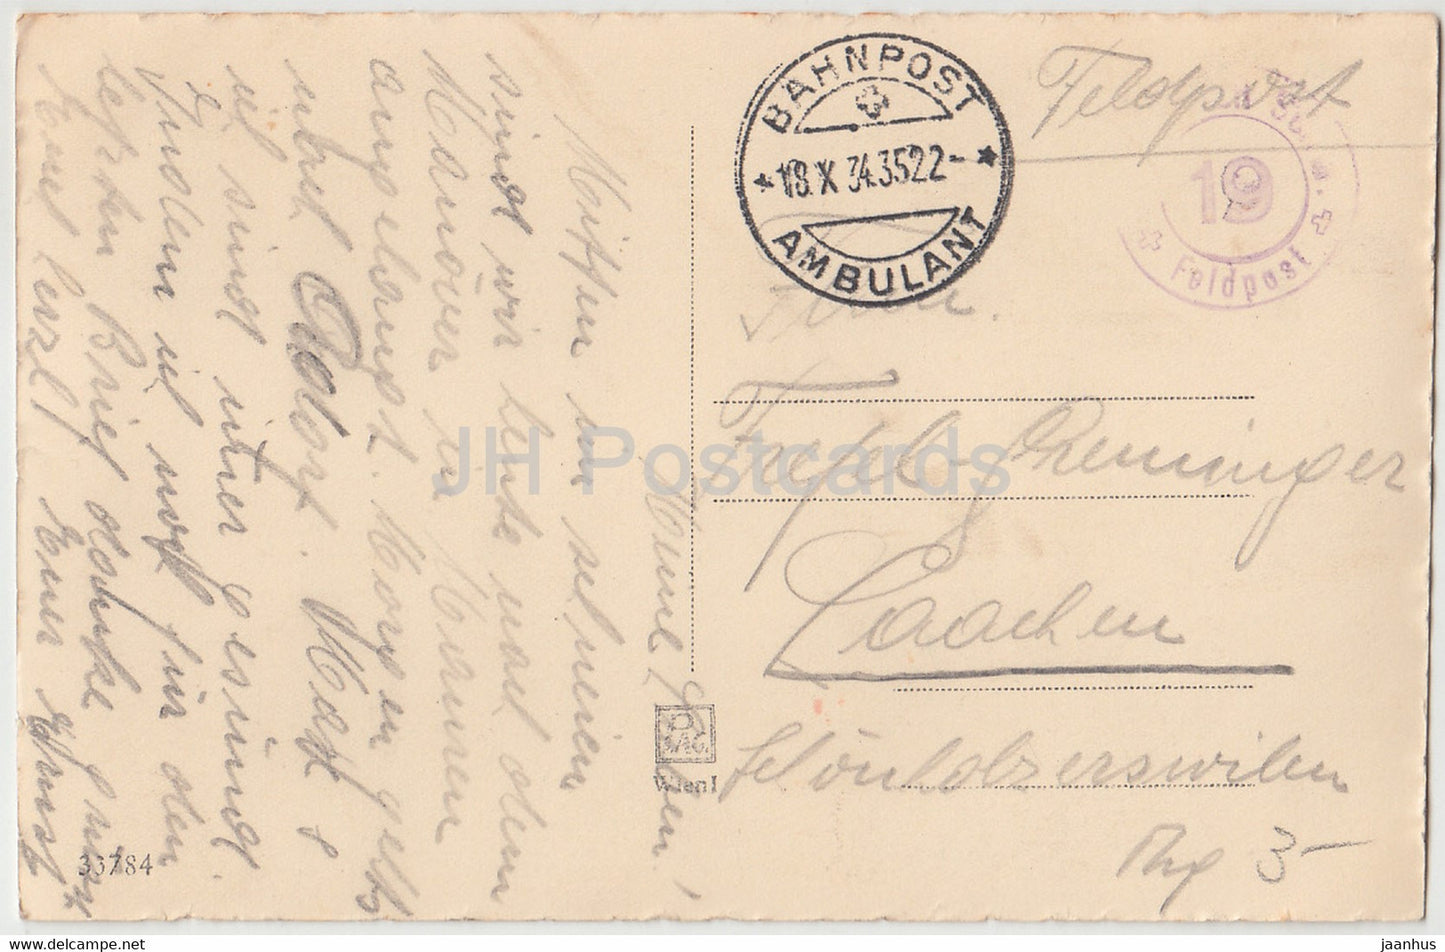 Scheidende Sonne - Feldpost - Bahnpost Ambulant - 33784 - alte Postkarte - 1934 - Österreich - gebraucht